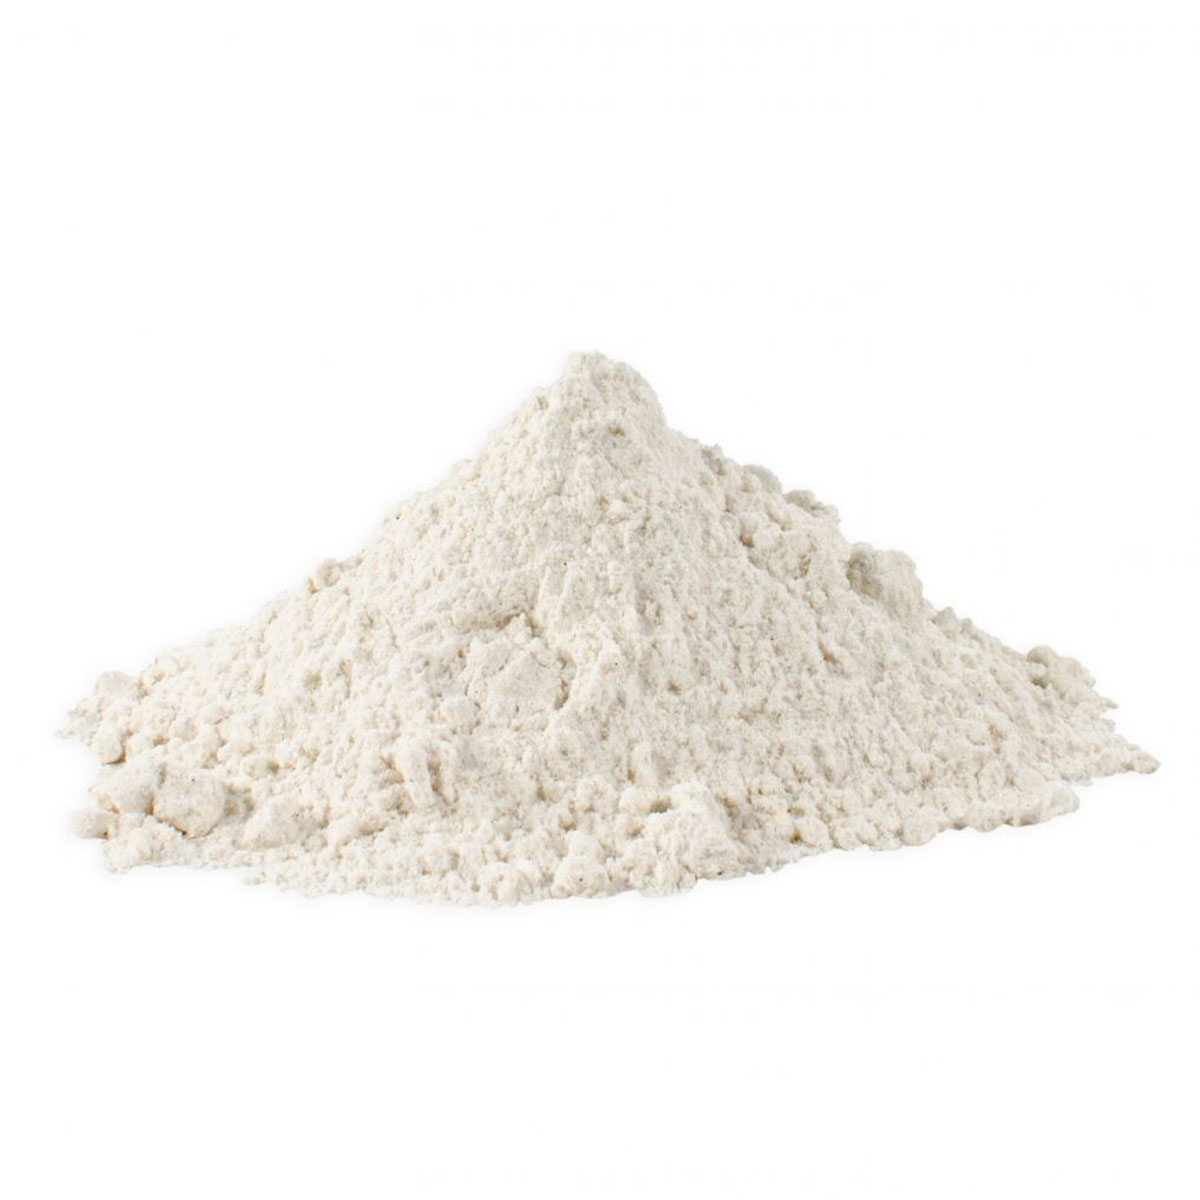 Bột Mì Đa Dụng Không Tẩy Trắng, Không Biến Đổi Gen Bob's Red Mill Unbleached All Purpose White Flour, Gói 2.27 Kg (80 Oz.) 5 Lb. 5